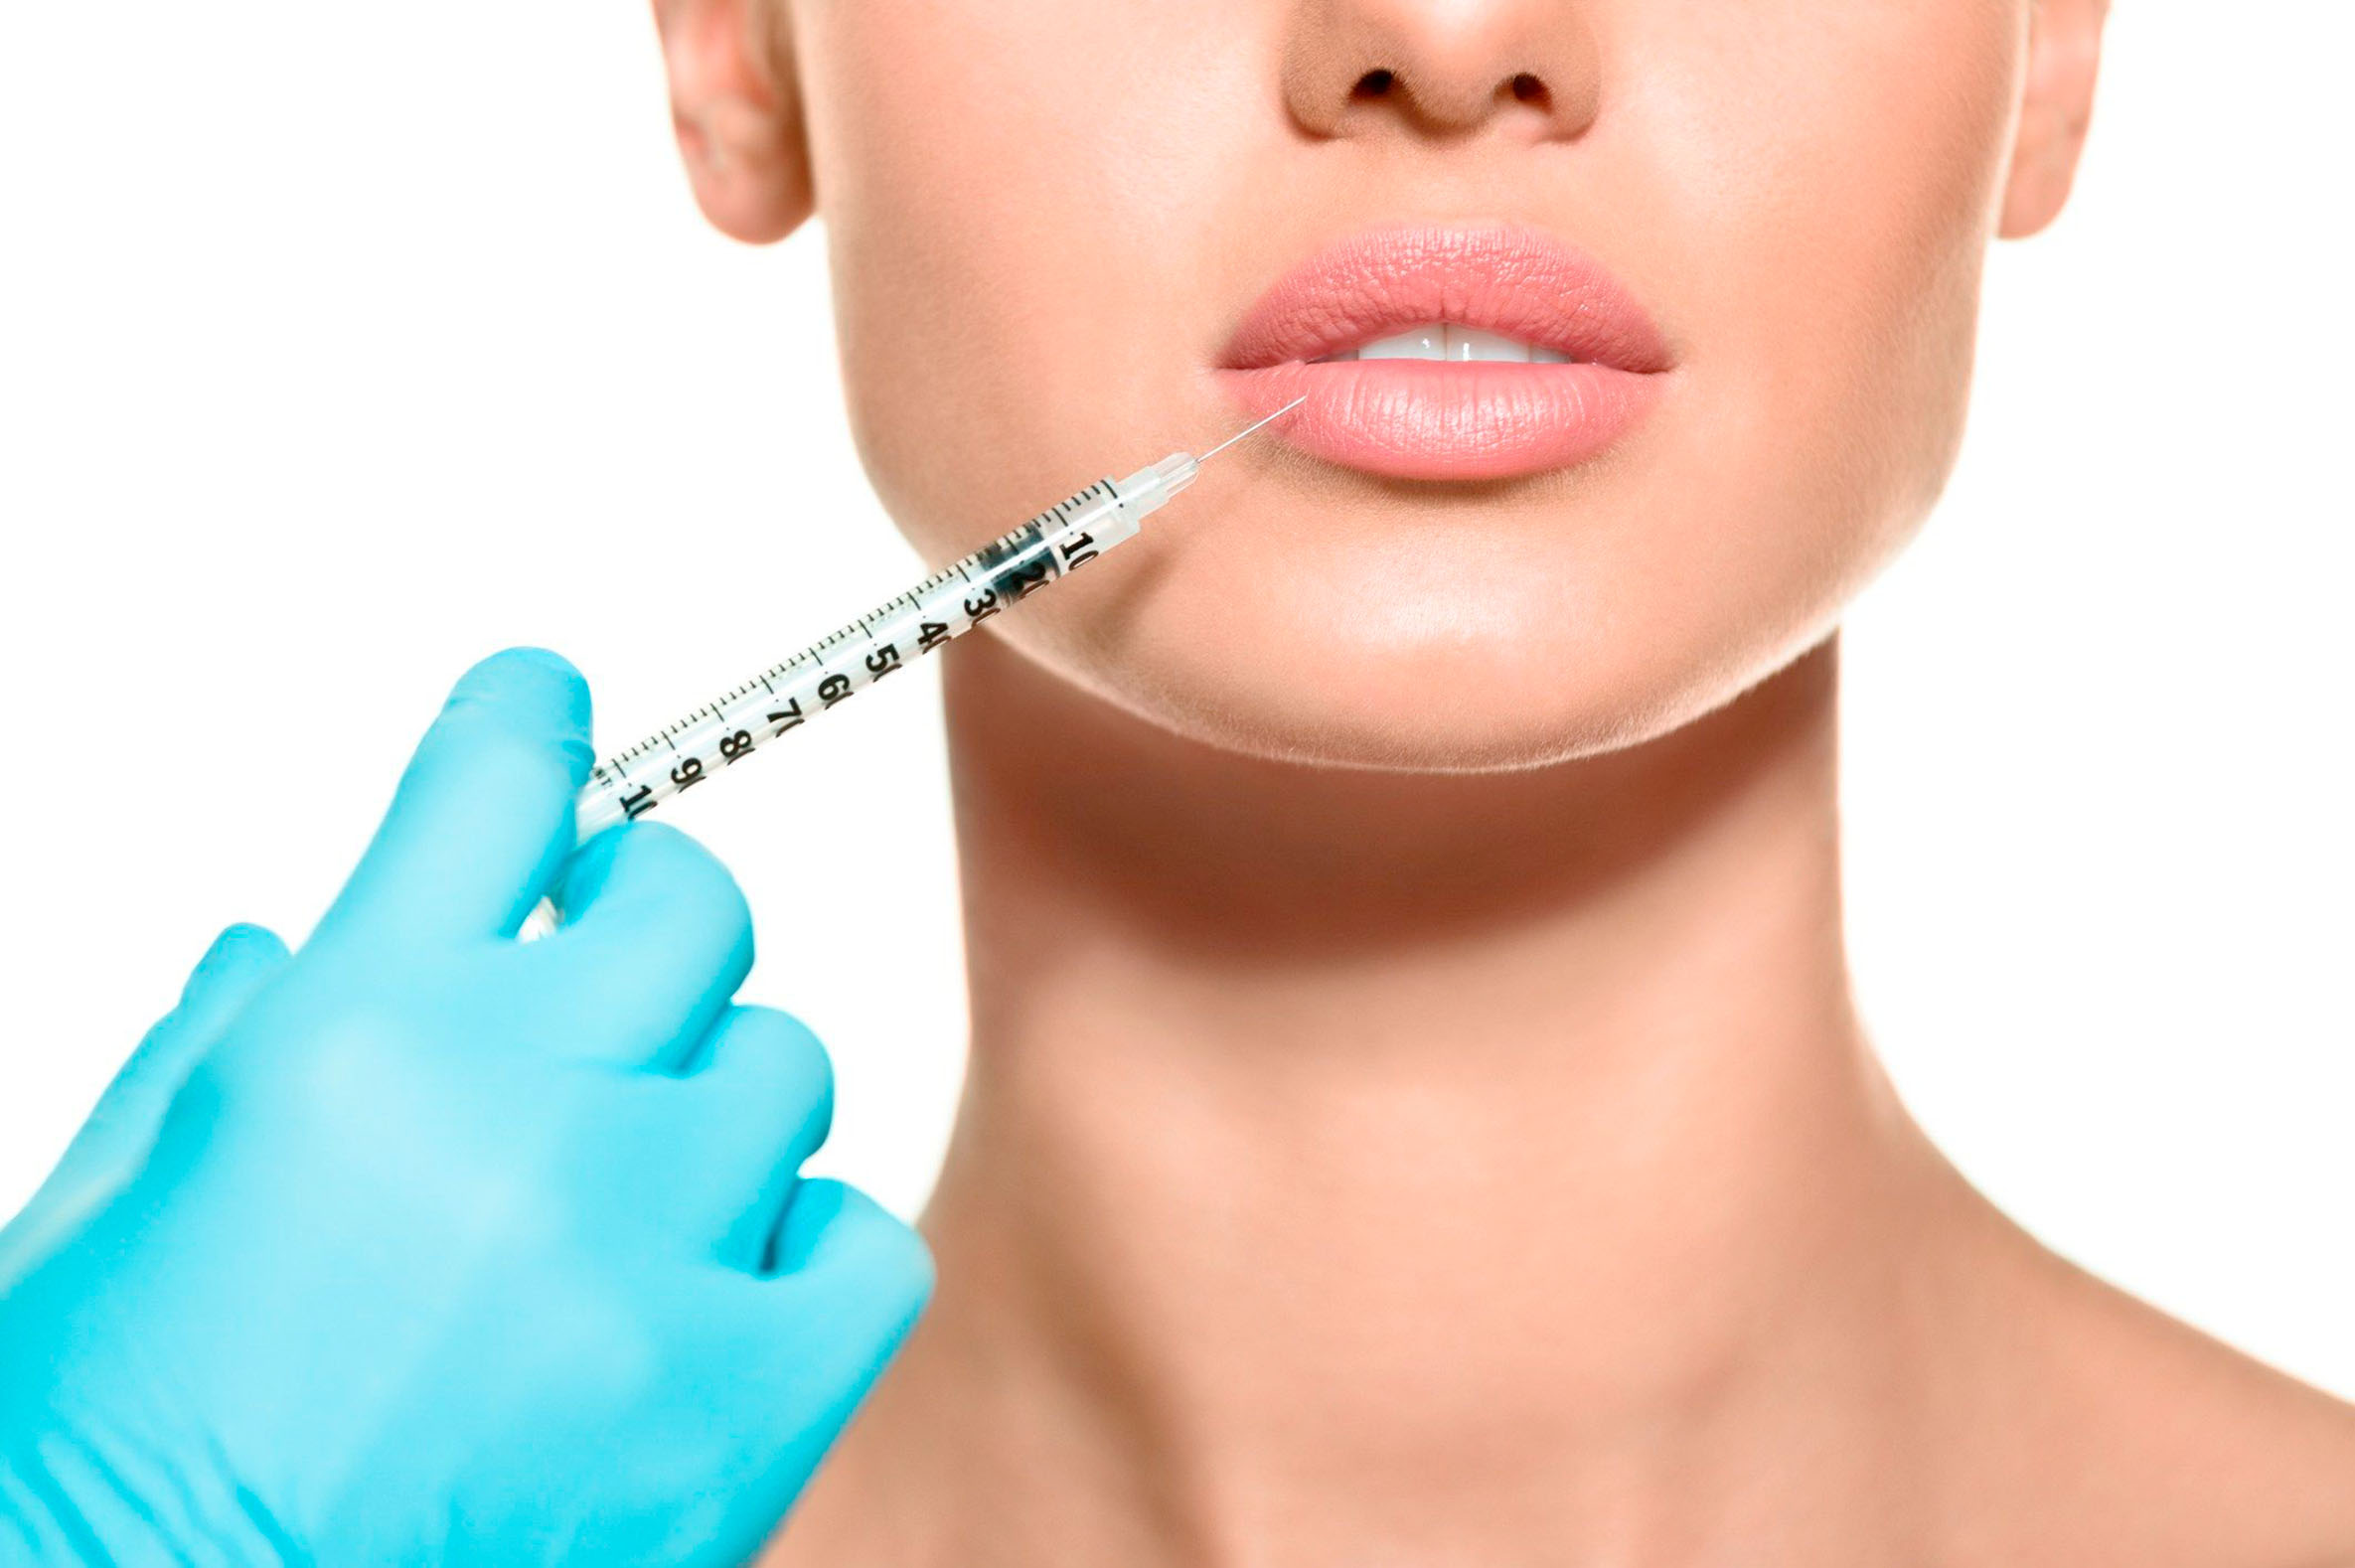 Увеличение и коррекция губ гиалуроновой кислотой 